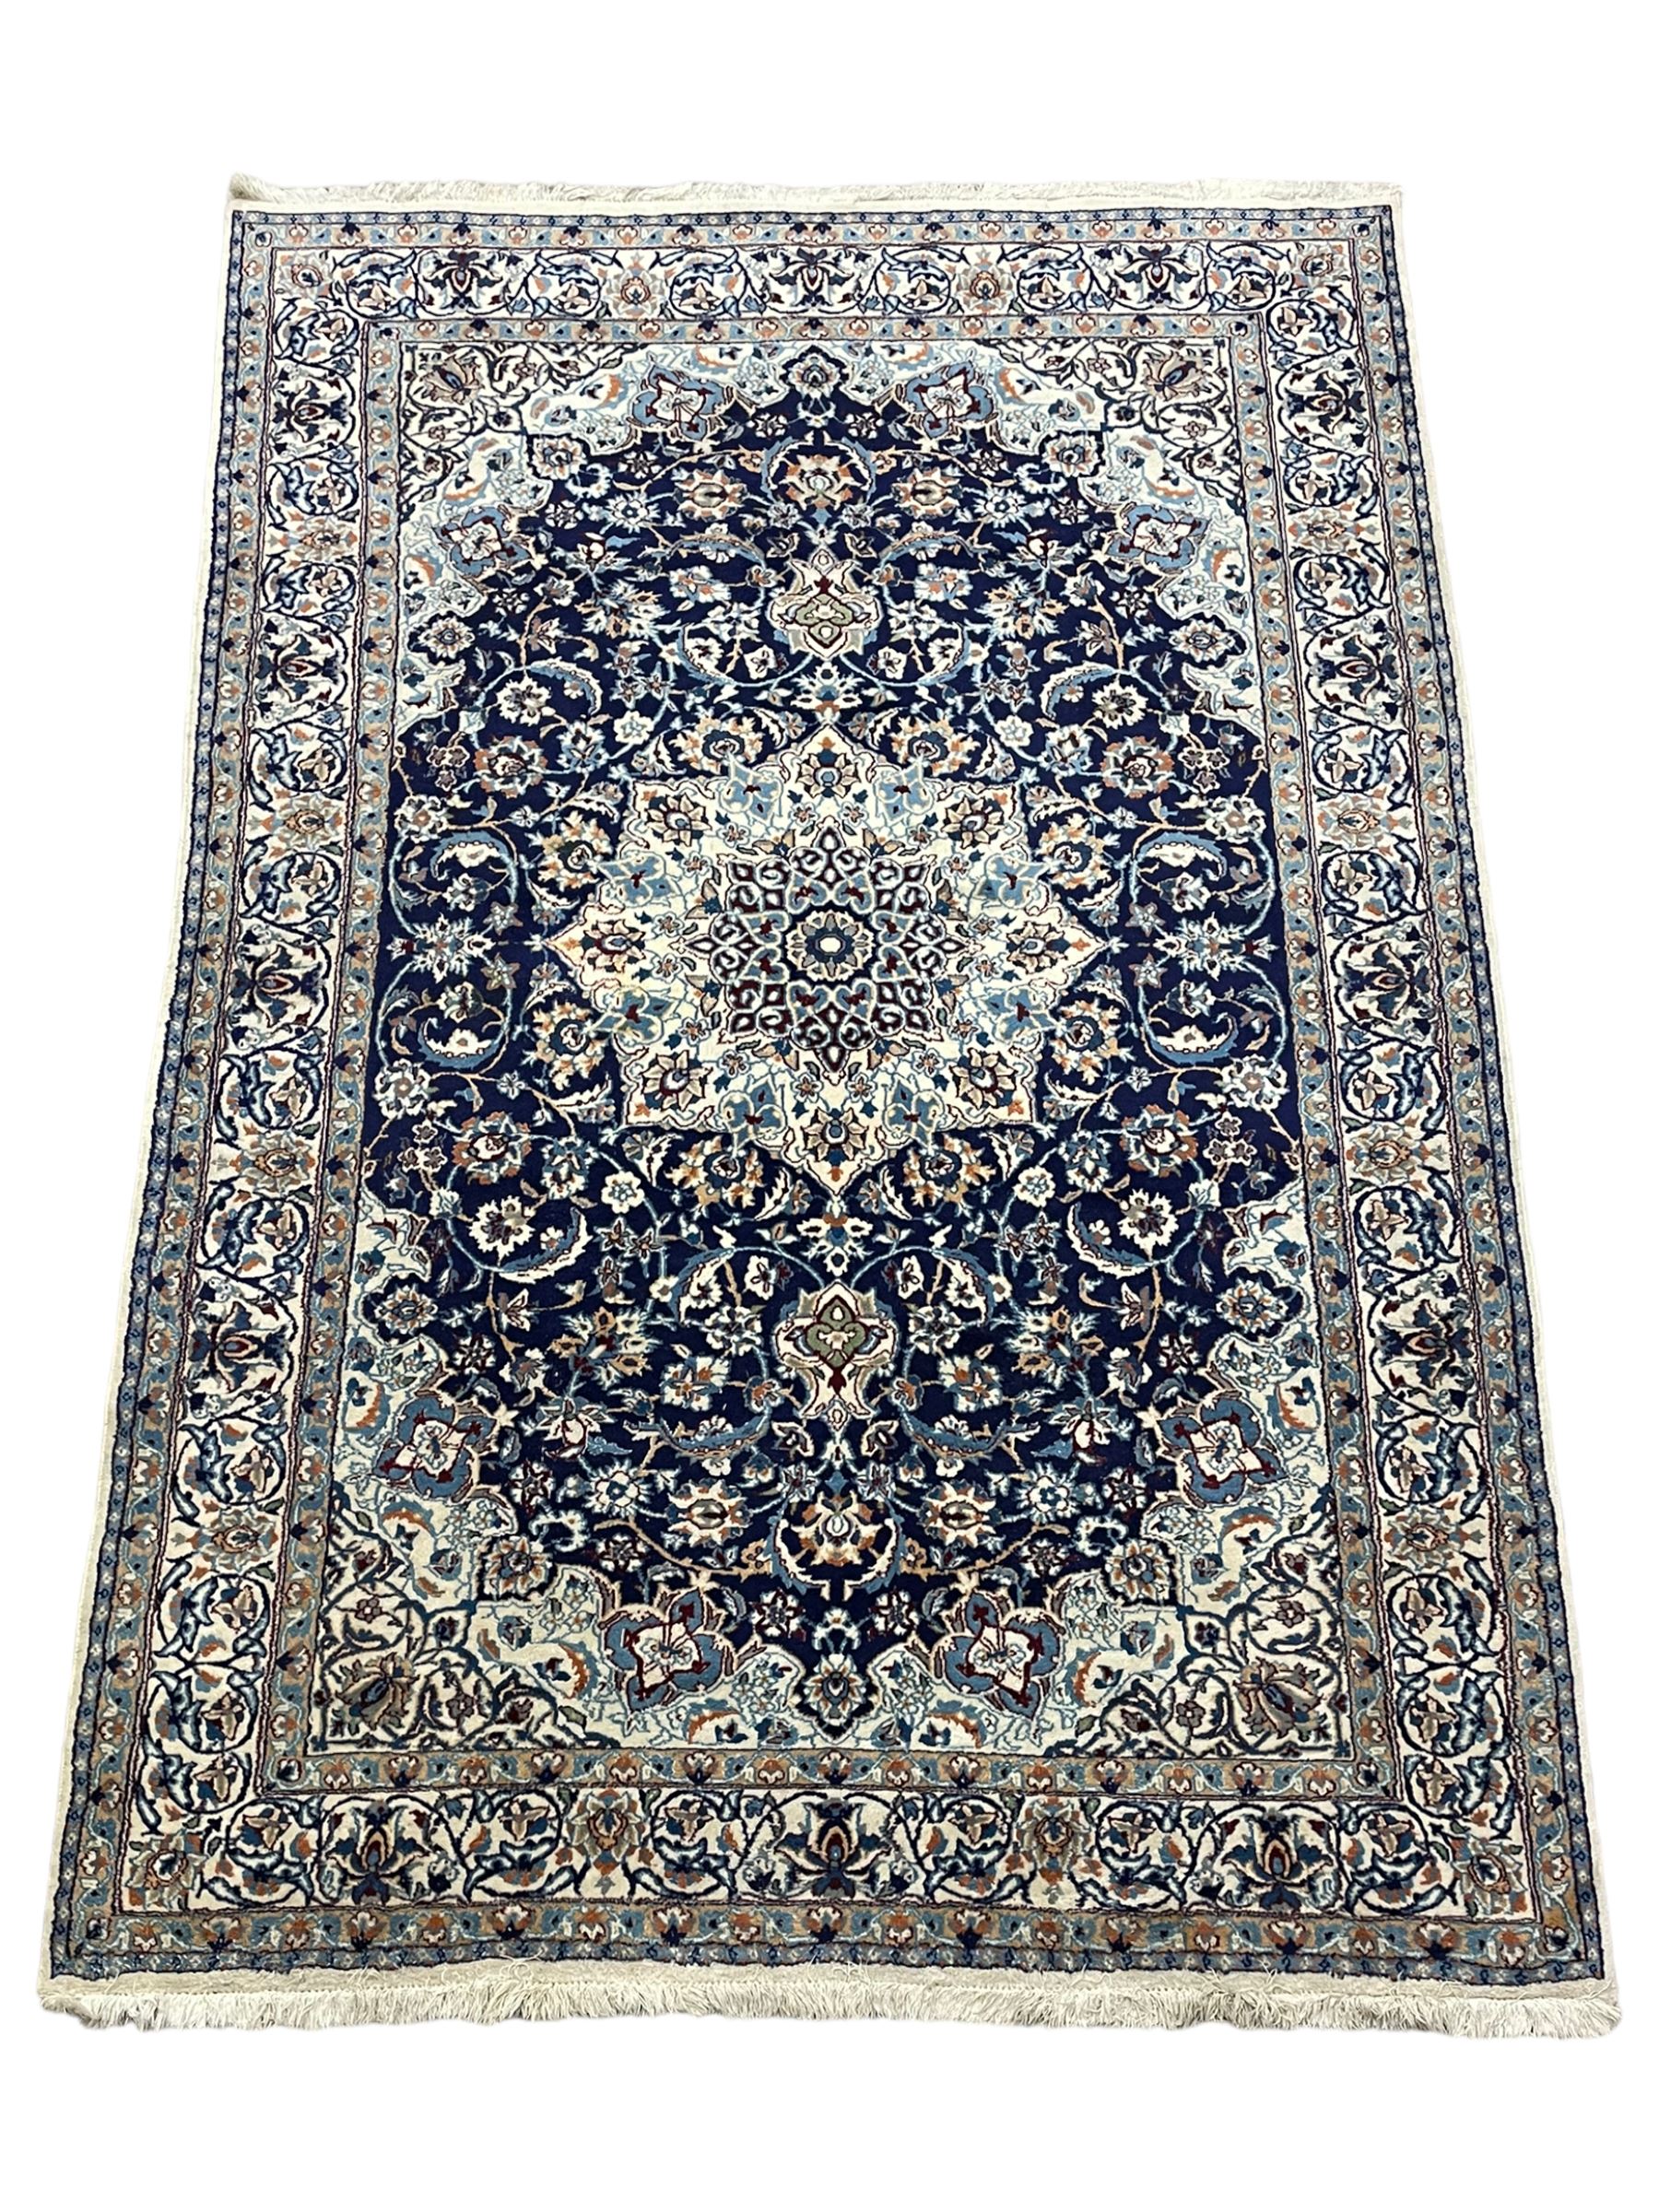 Persian Nain indigo and ivory ground rug